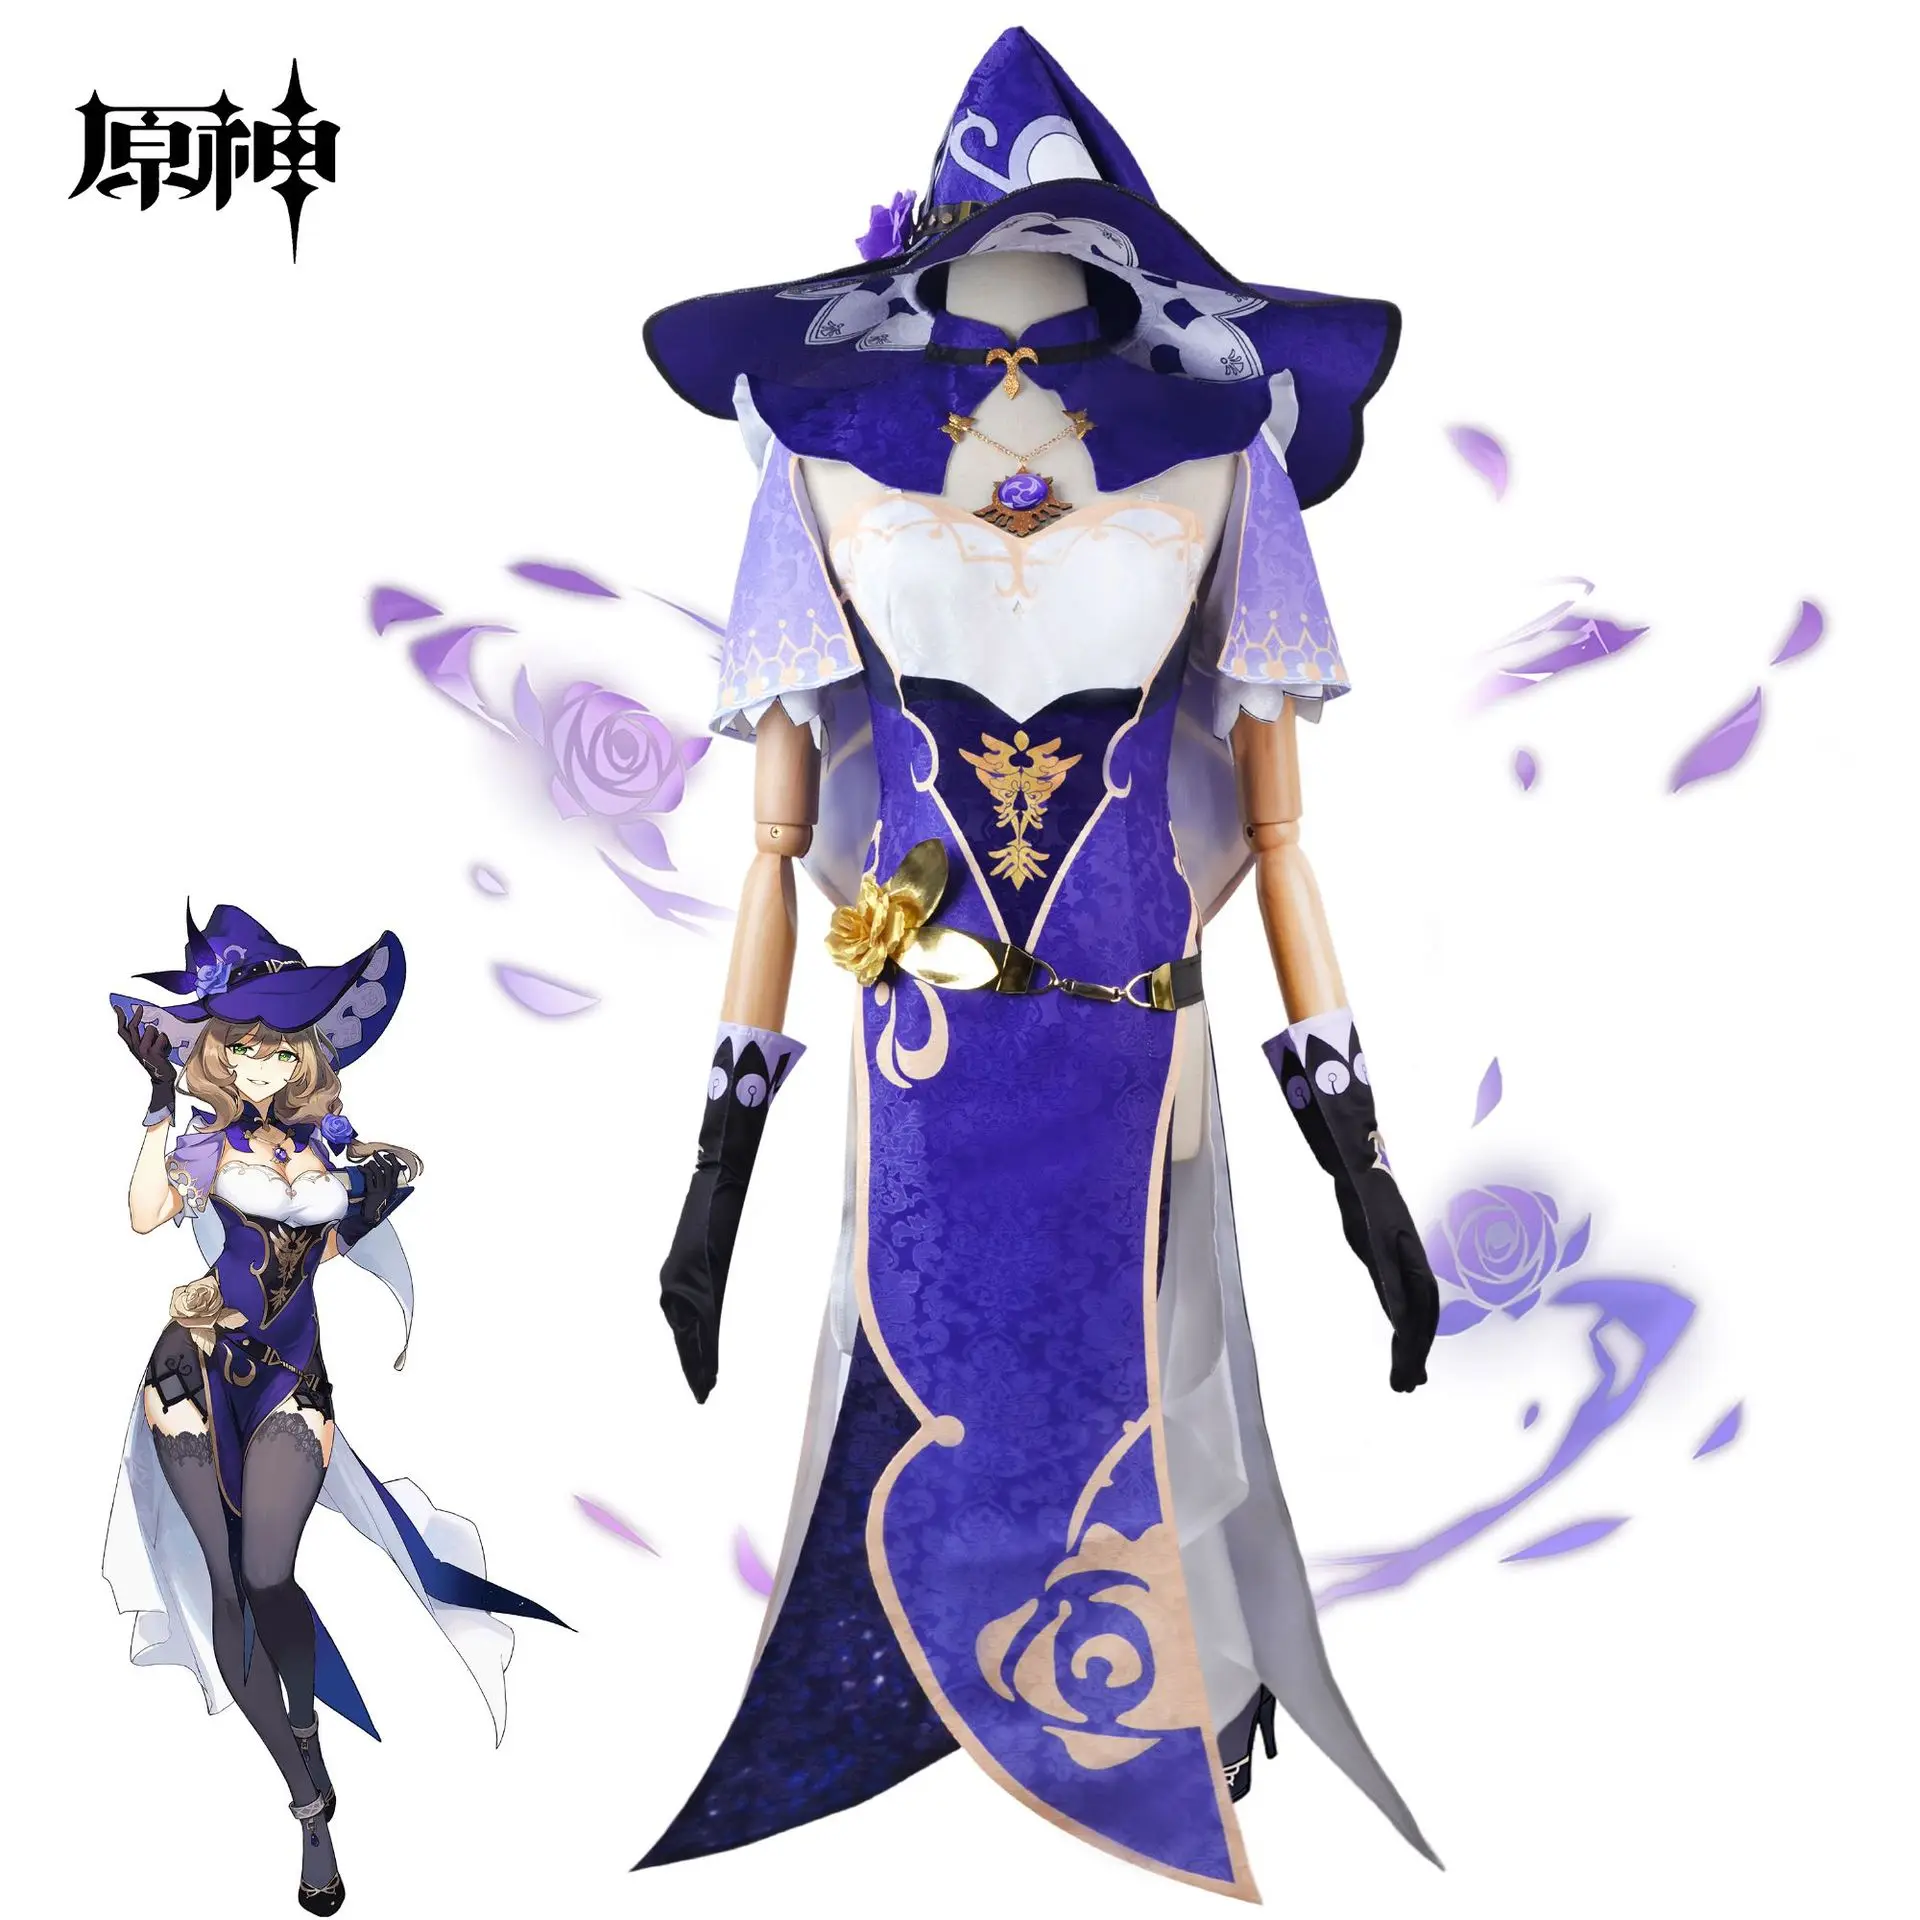 

Наряды на Хэллоуин из игры Genshin Impact, костюм для косплея Лизы минчи Лизы, ведьмы, включающий платье, шапку, чулки, парик Лизы, наряды